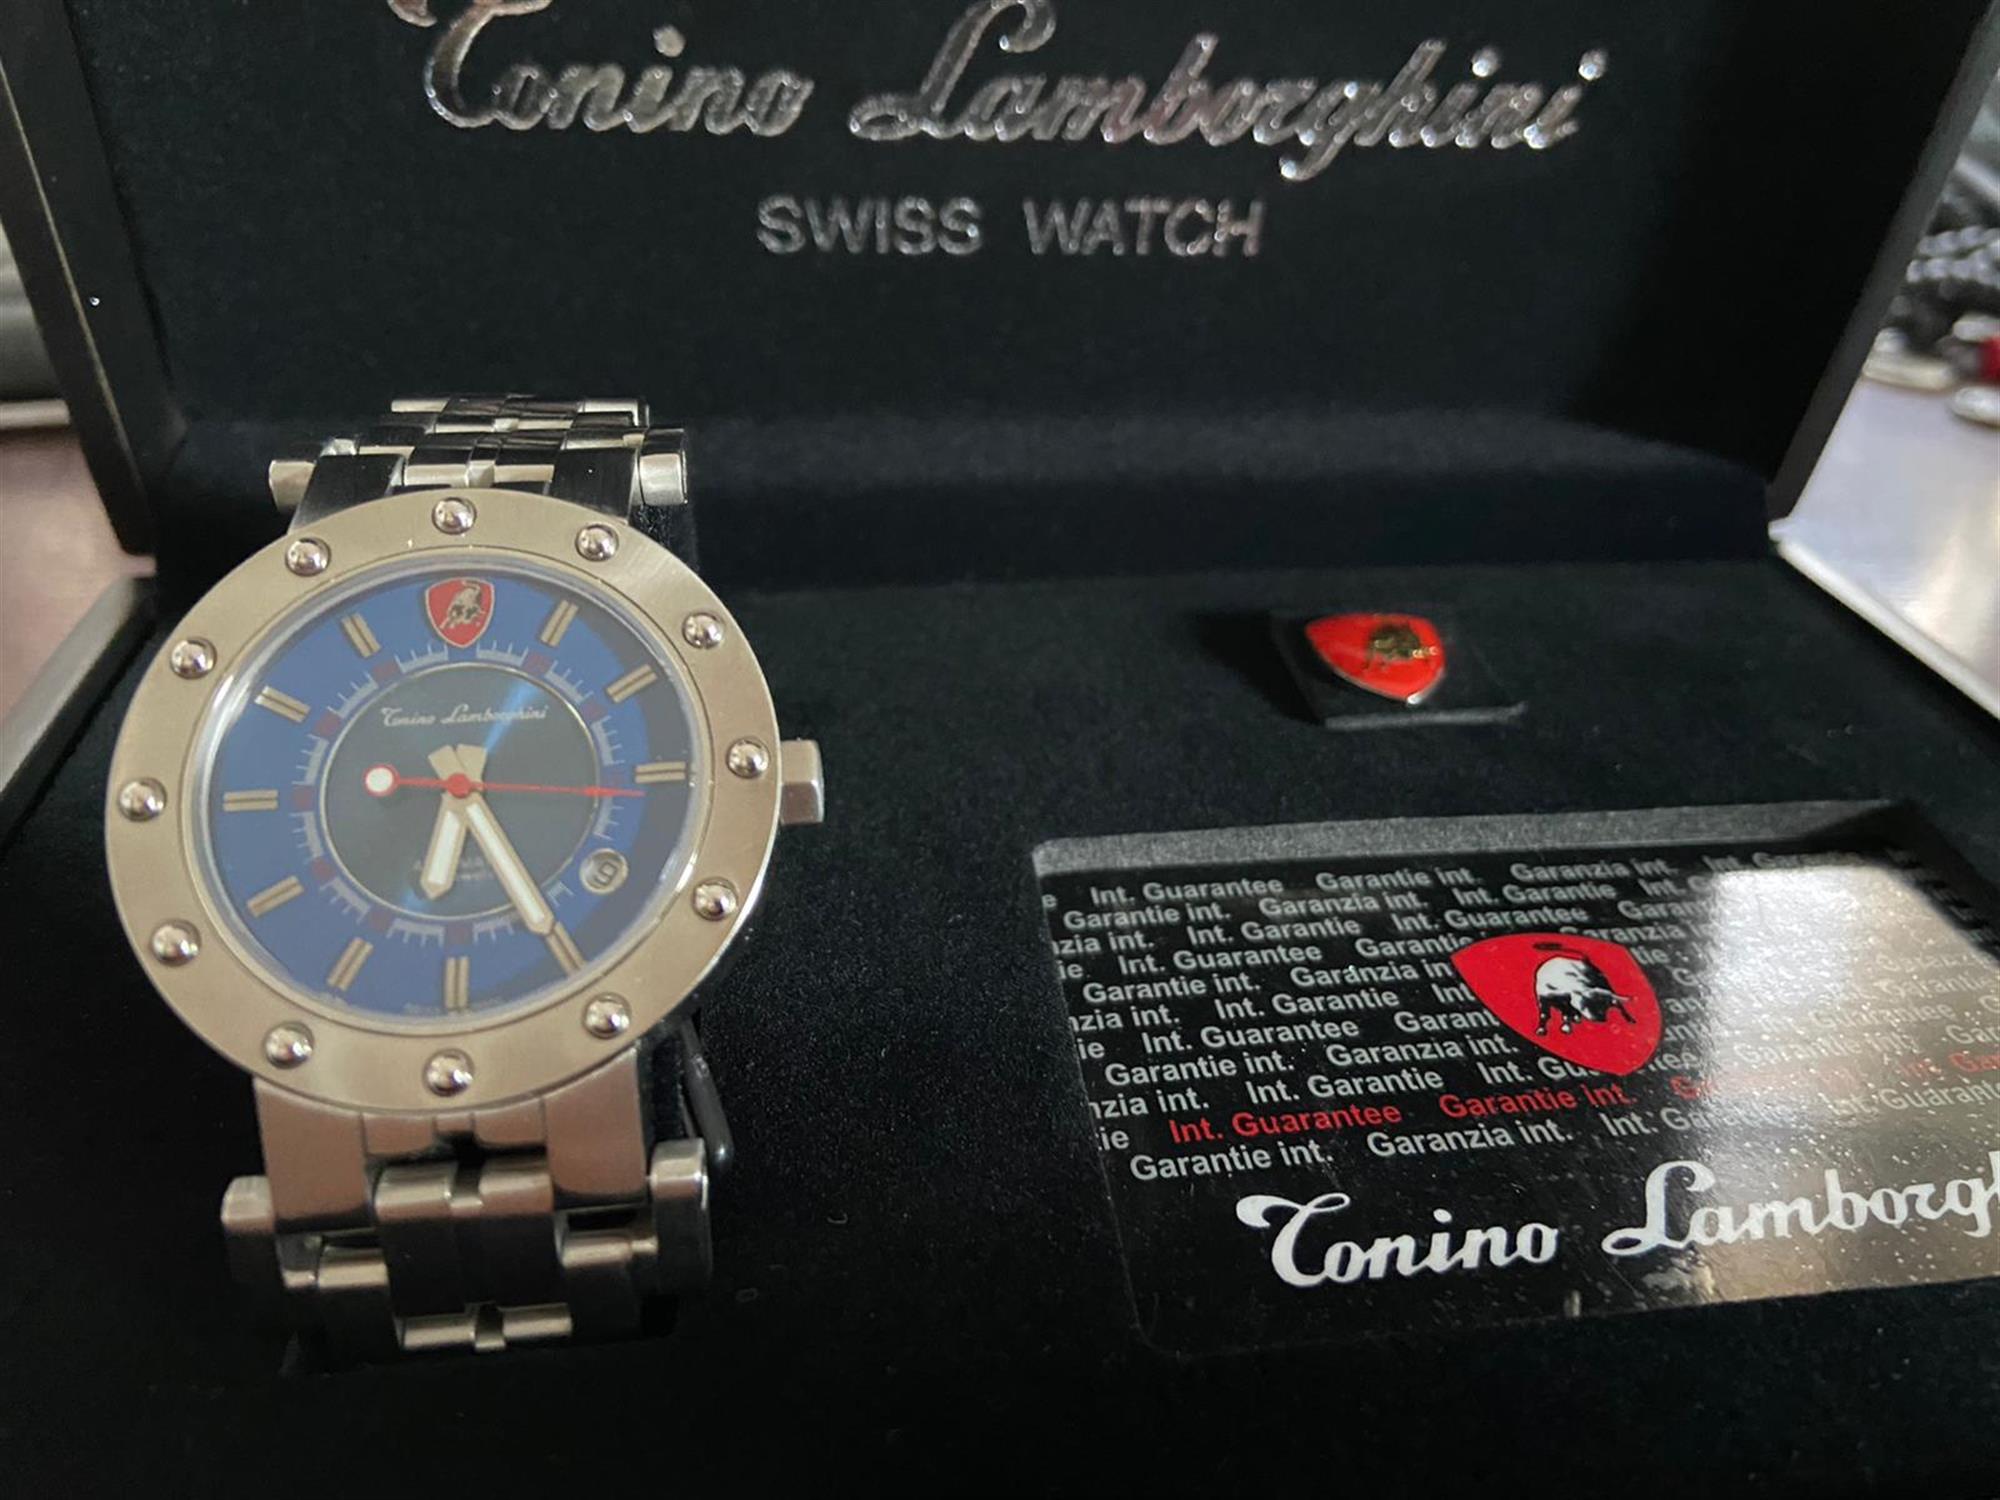 Tonino Lamborghini Limited Edition Watch - Image 2 of 8